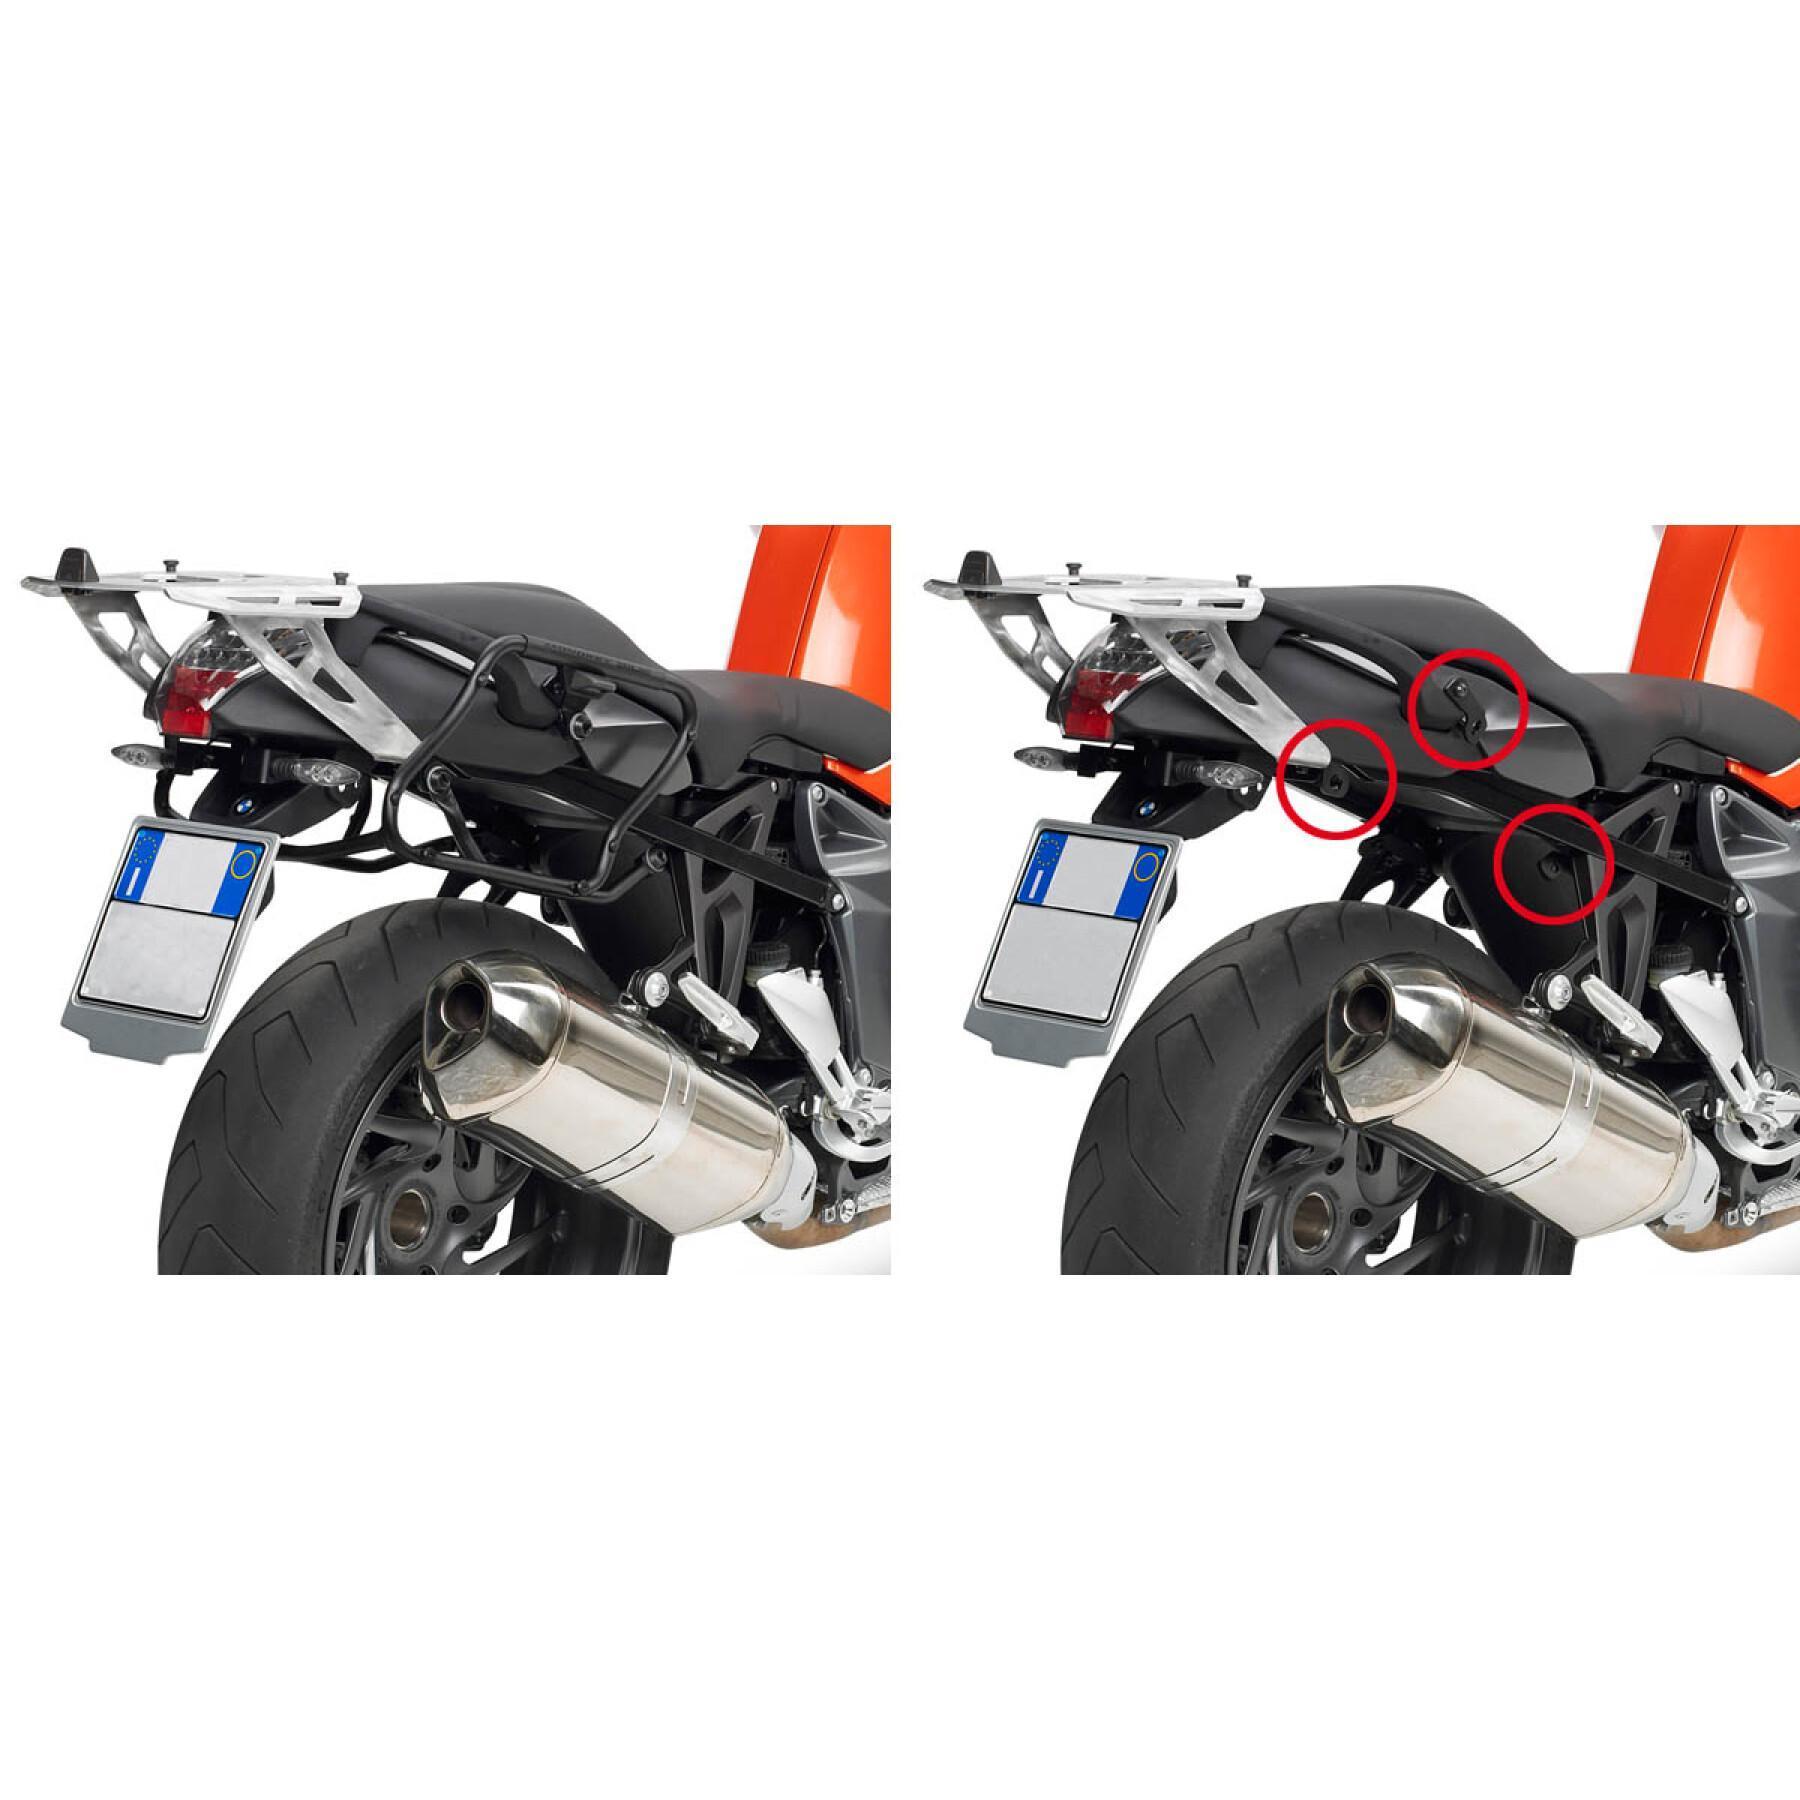 Support valises latérales moto Rapide Givi Monokey Side Bmw K 1200 R (05 À 08)/K 1300 R (09 À 16)